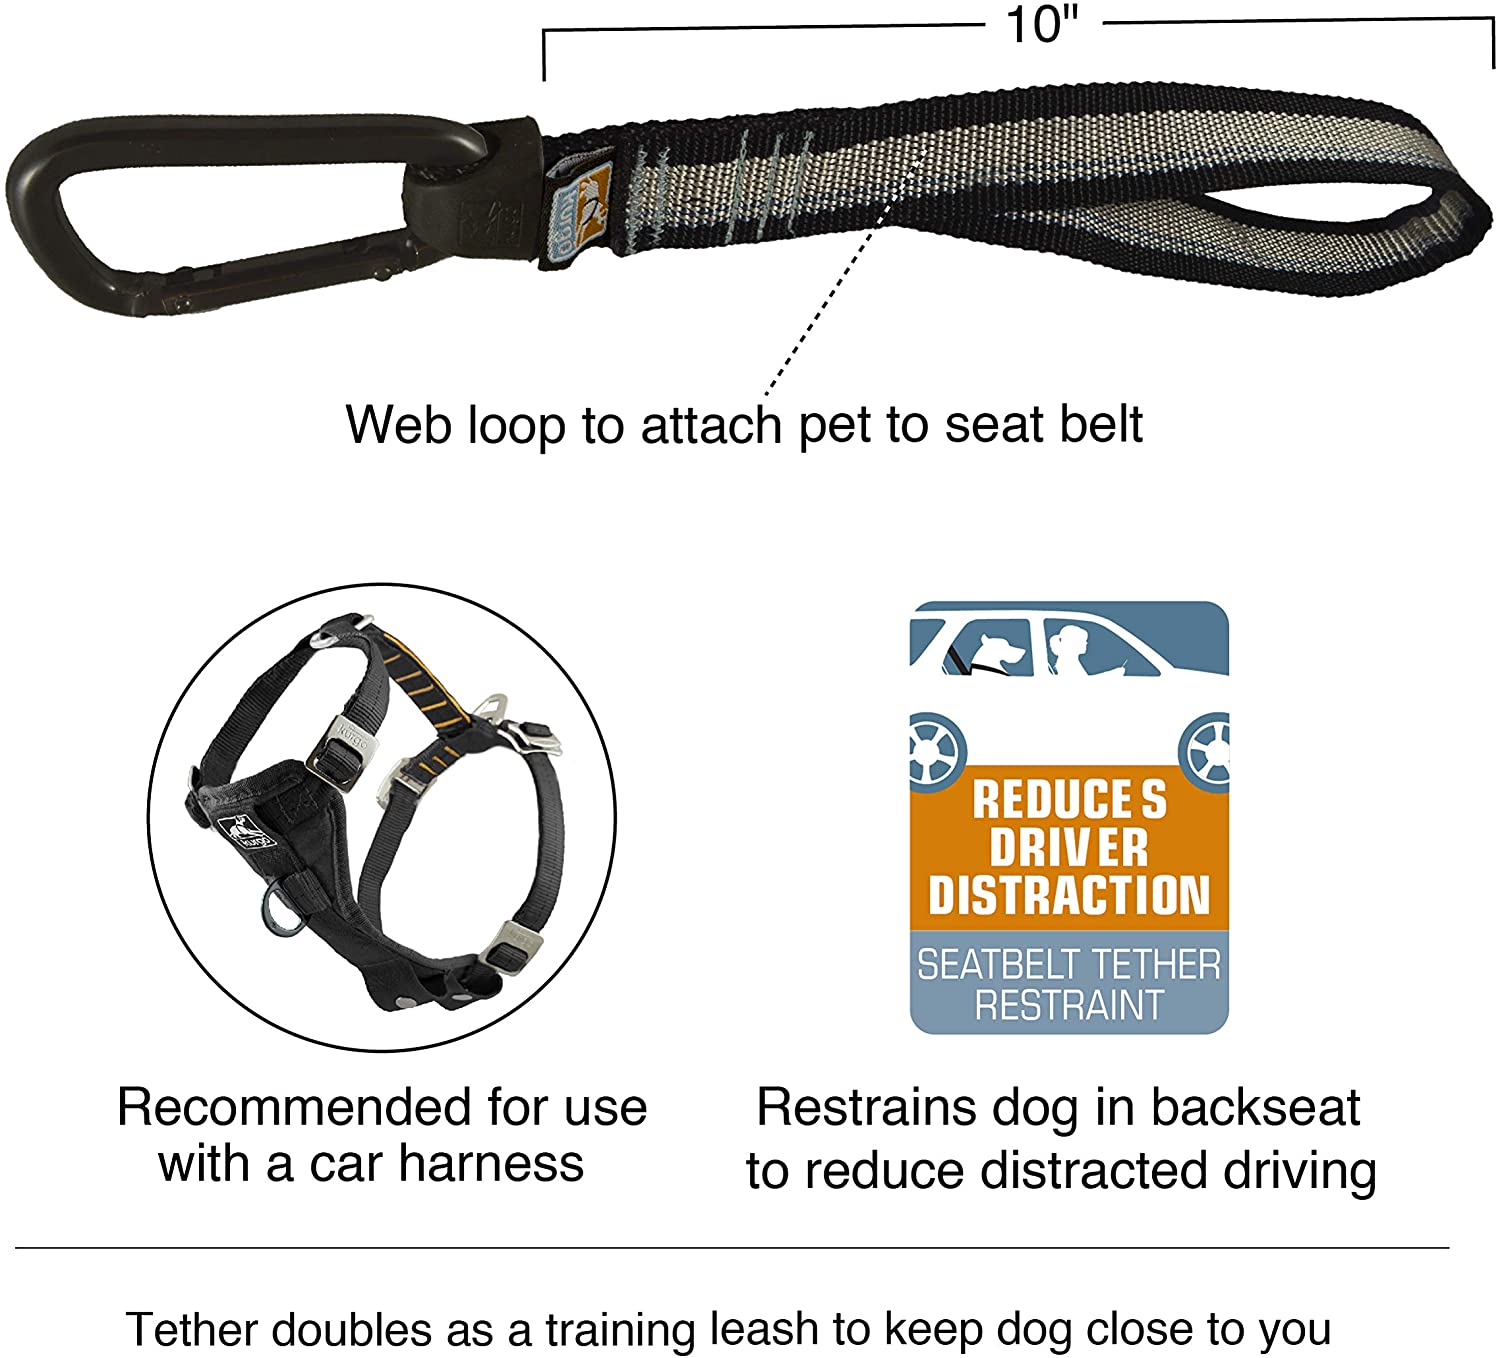  Kurgo Cinturón de Seguridad para Perros - Accesorio de Seguridad para Mascotas - Cinturón de Seguridad Ajustable para Arnés de Perro 